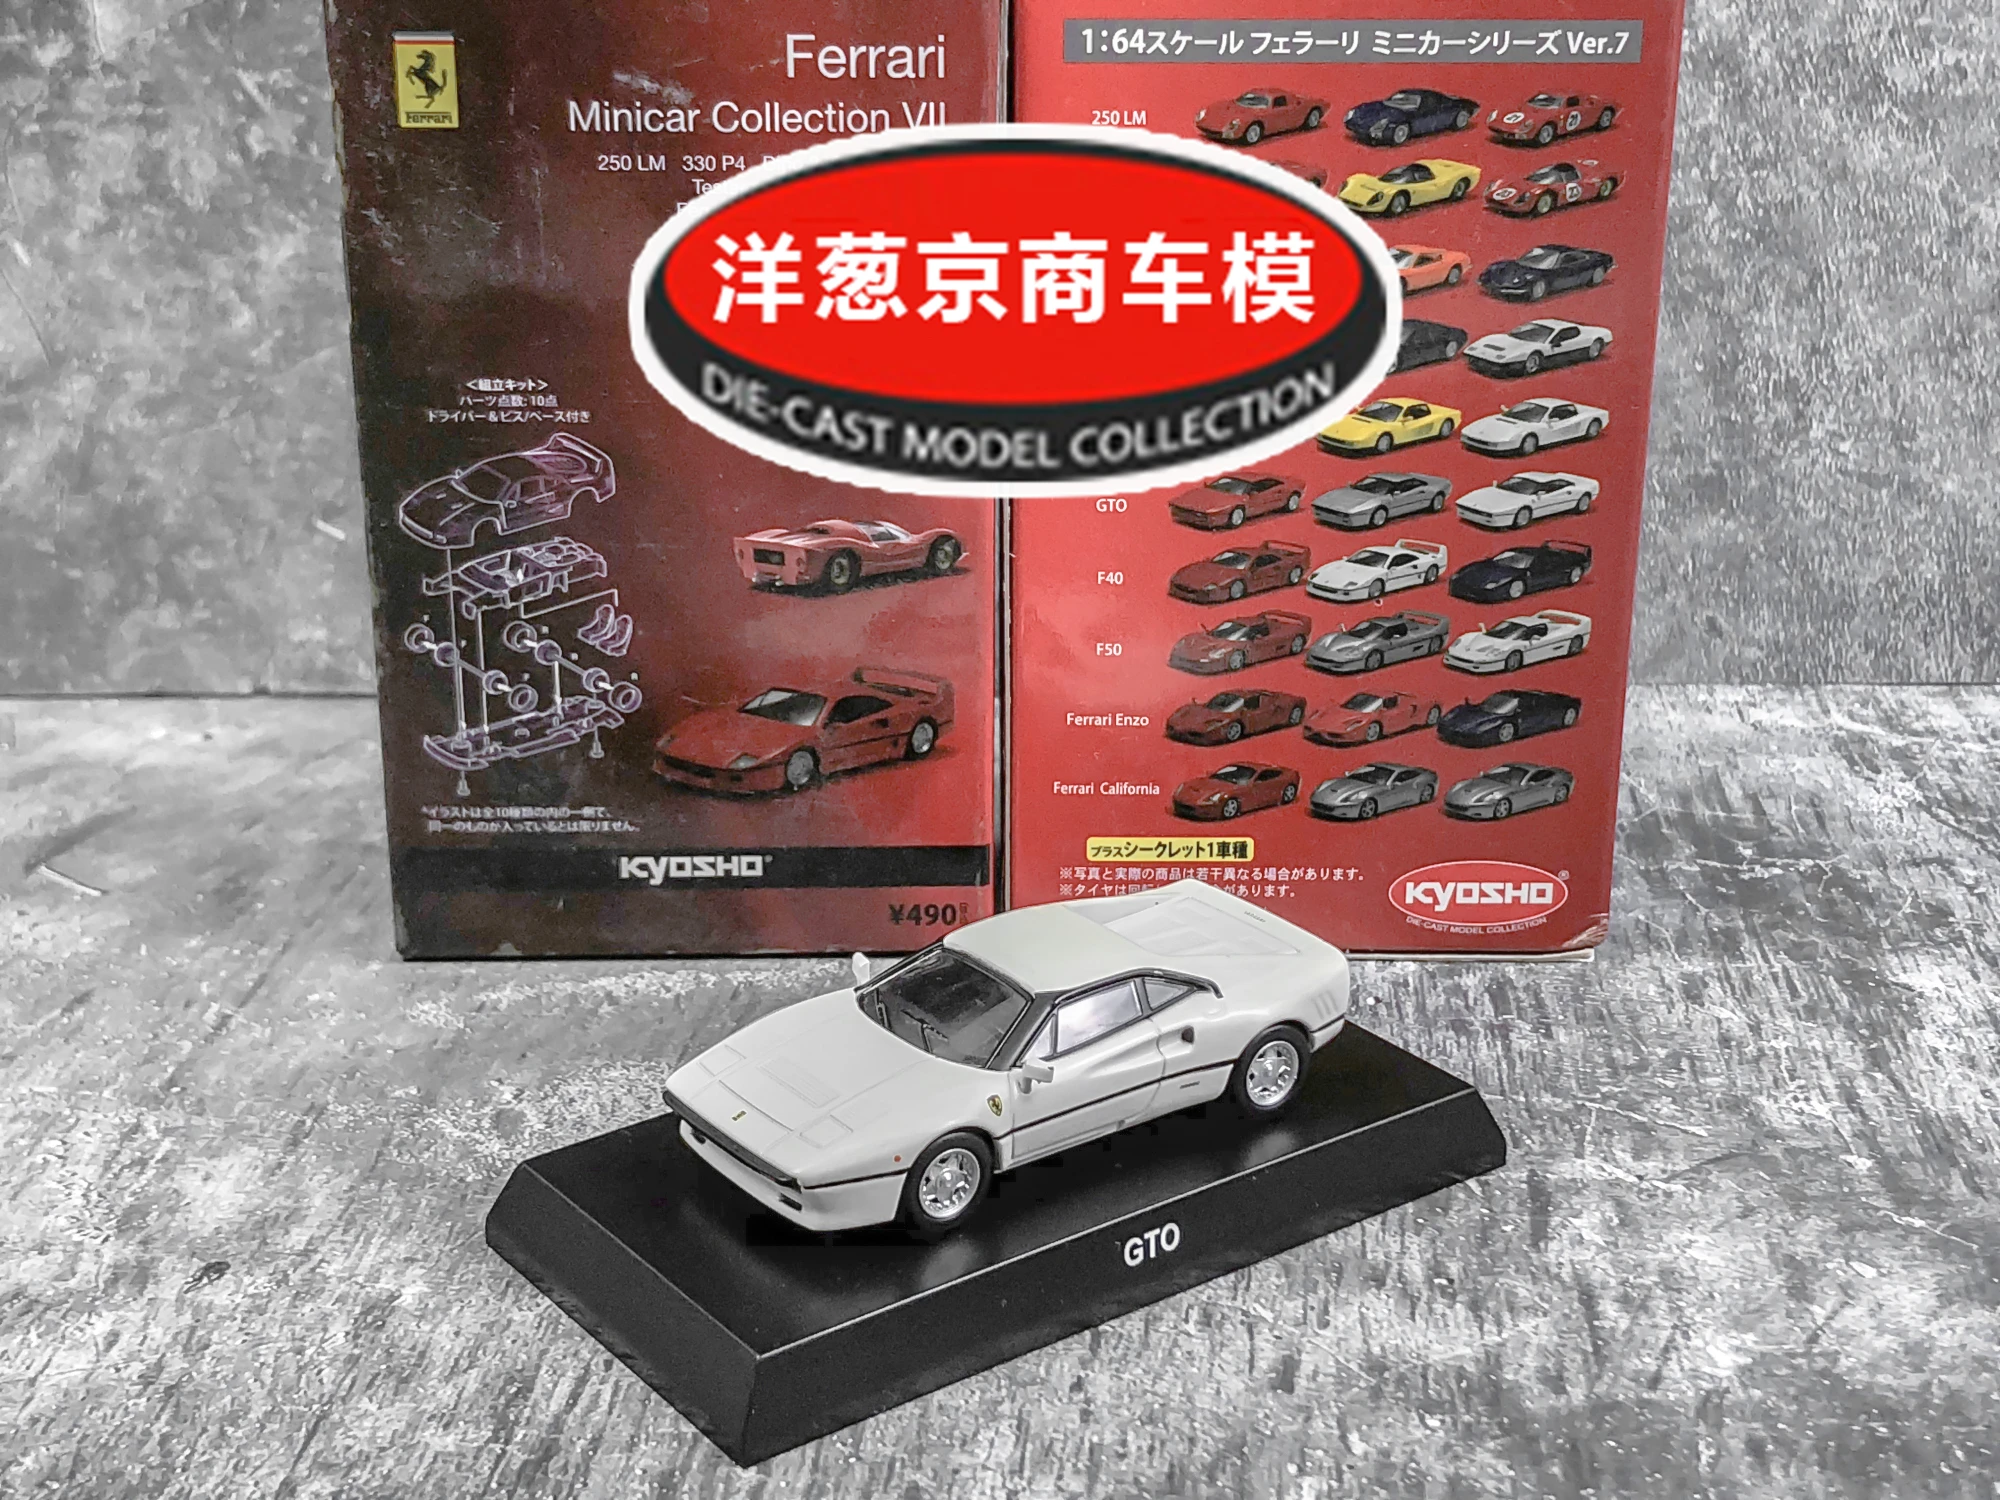 Kyosho-Carro de aleación de fundición a presión modelo Ferrari 288 GTO, carro ensamblado, escala 1: 64